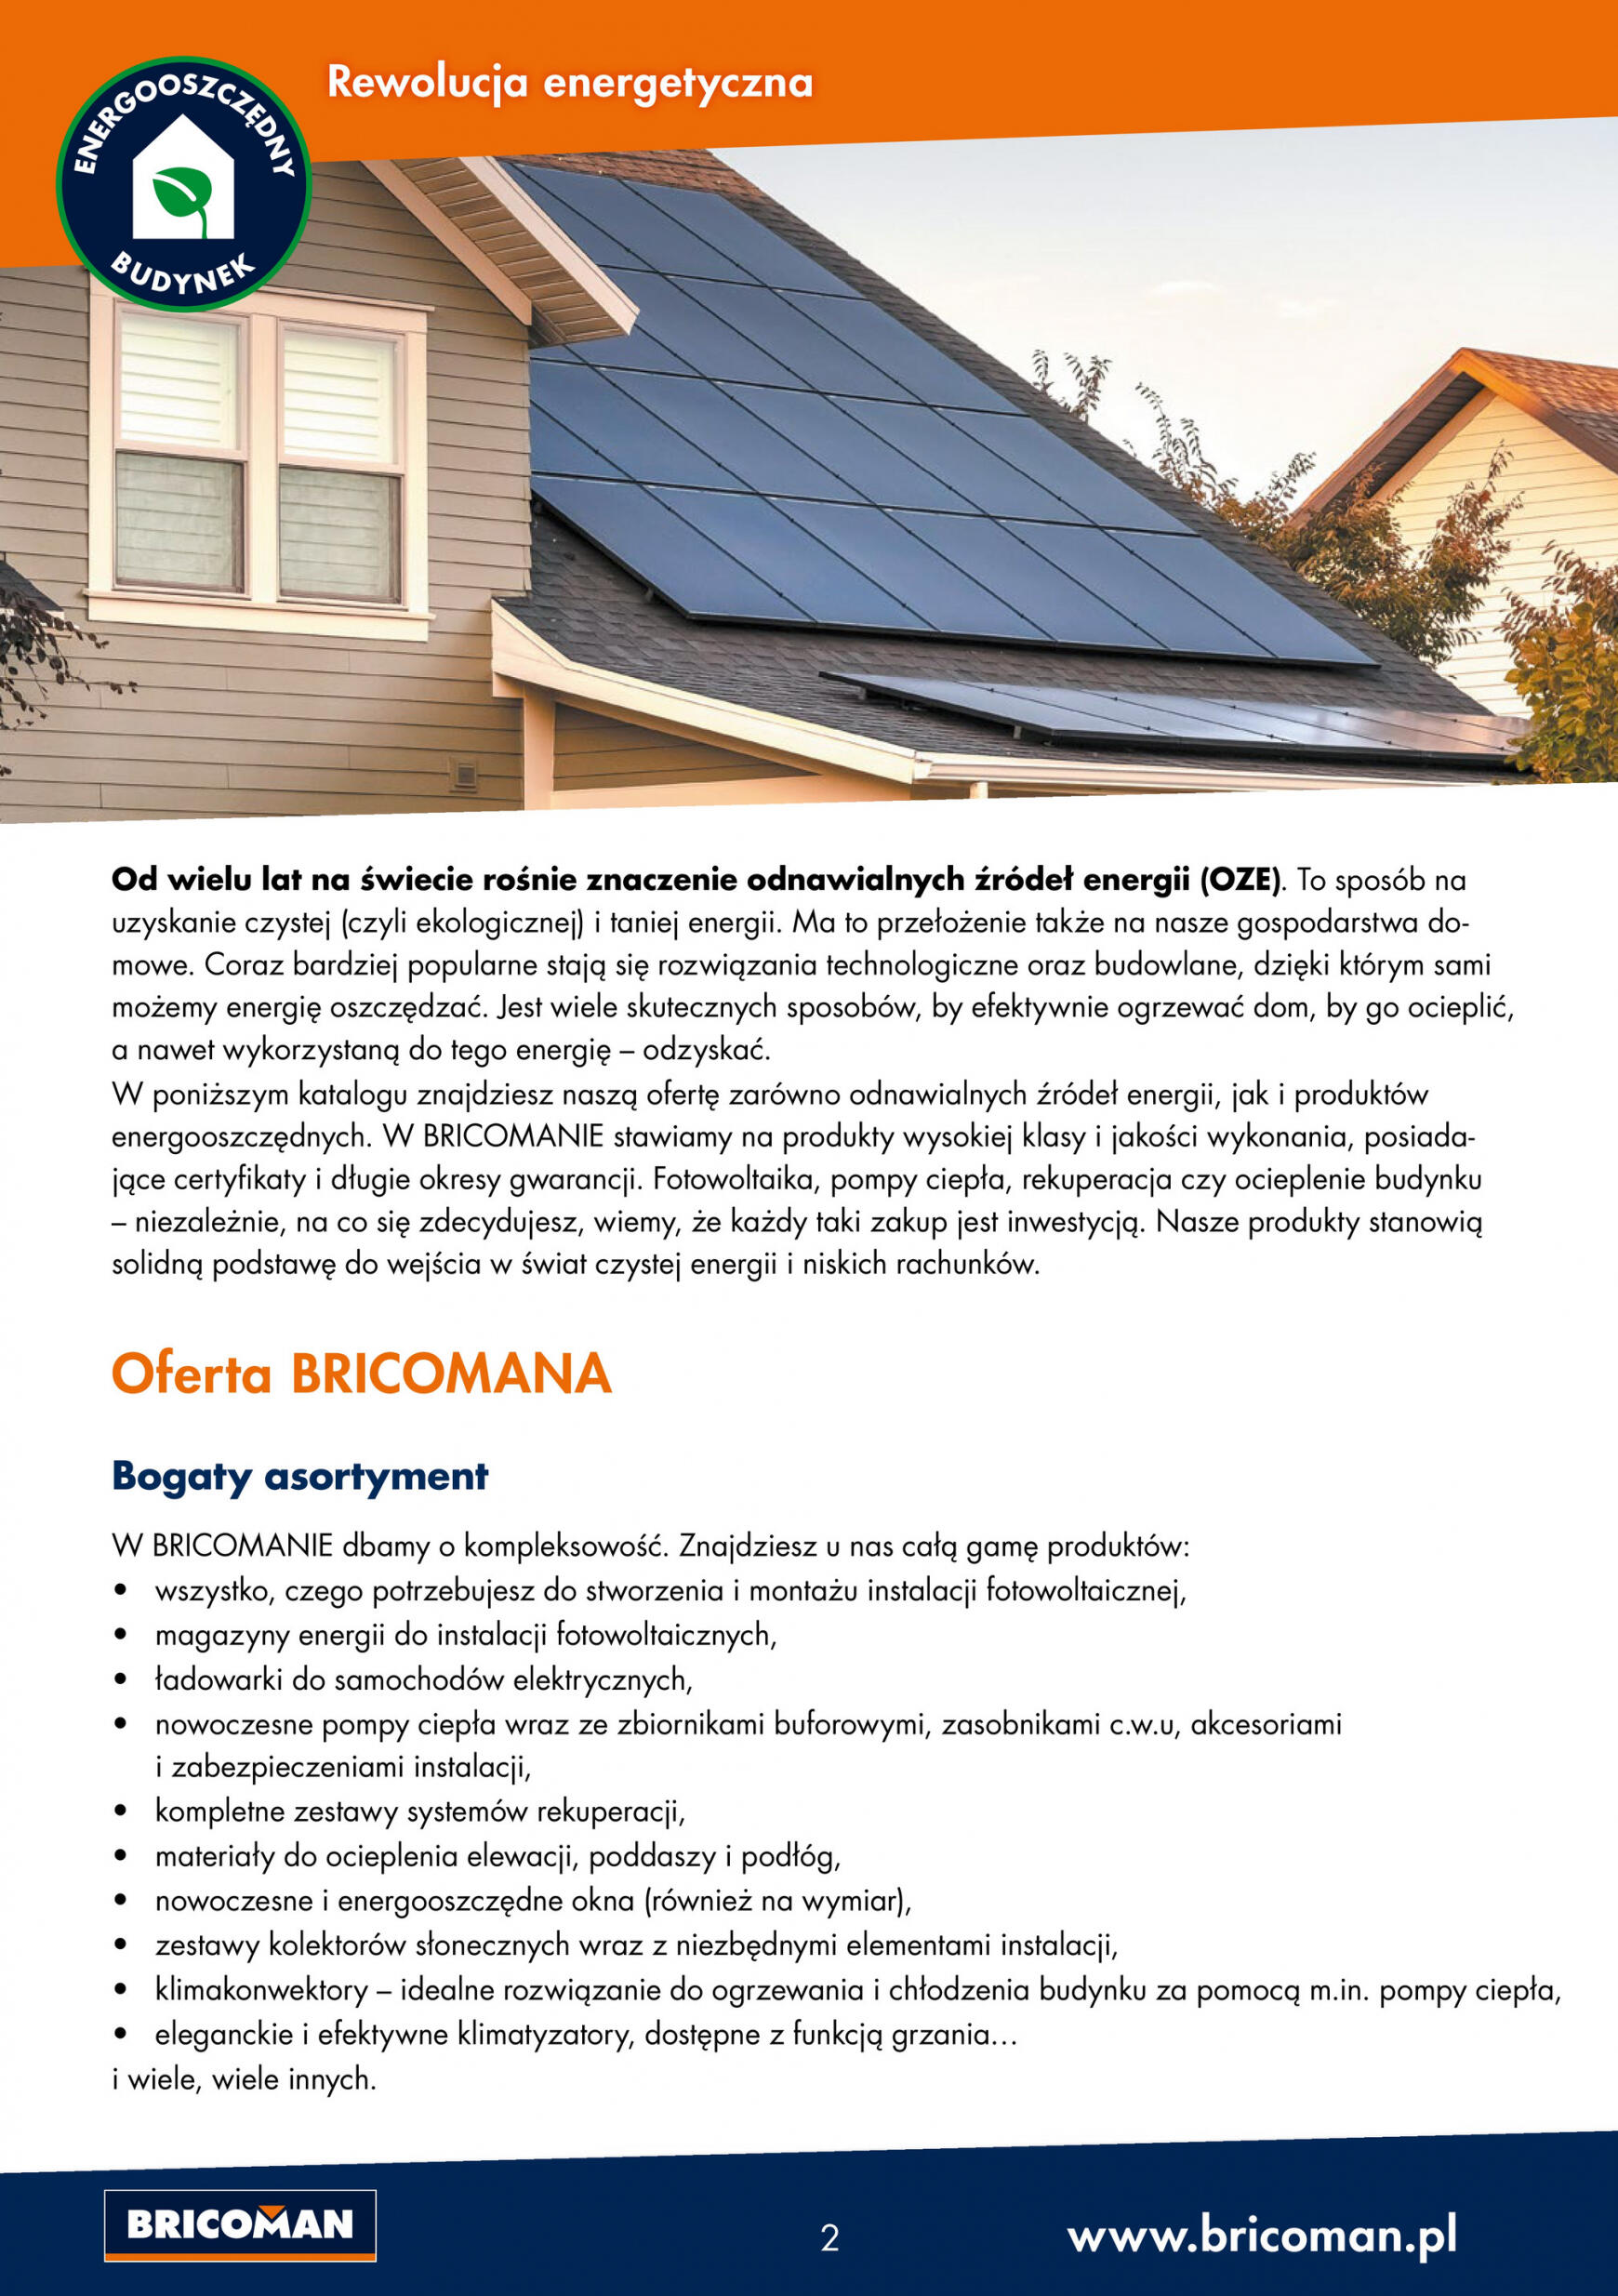 bricoman - Bricoman Polska - Oszczędzaj energie - page: 2